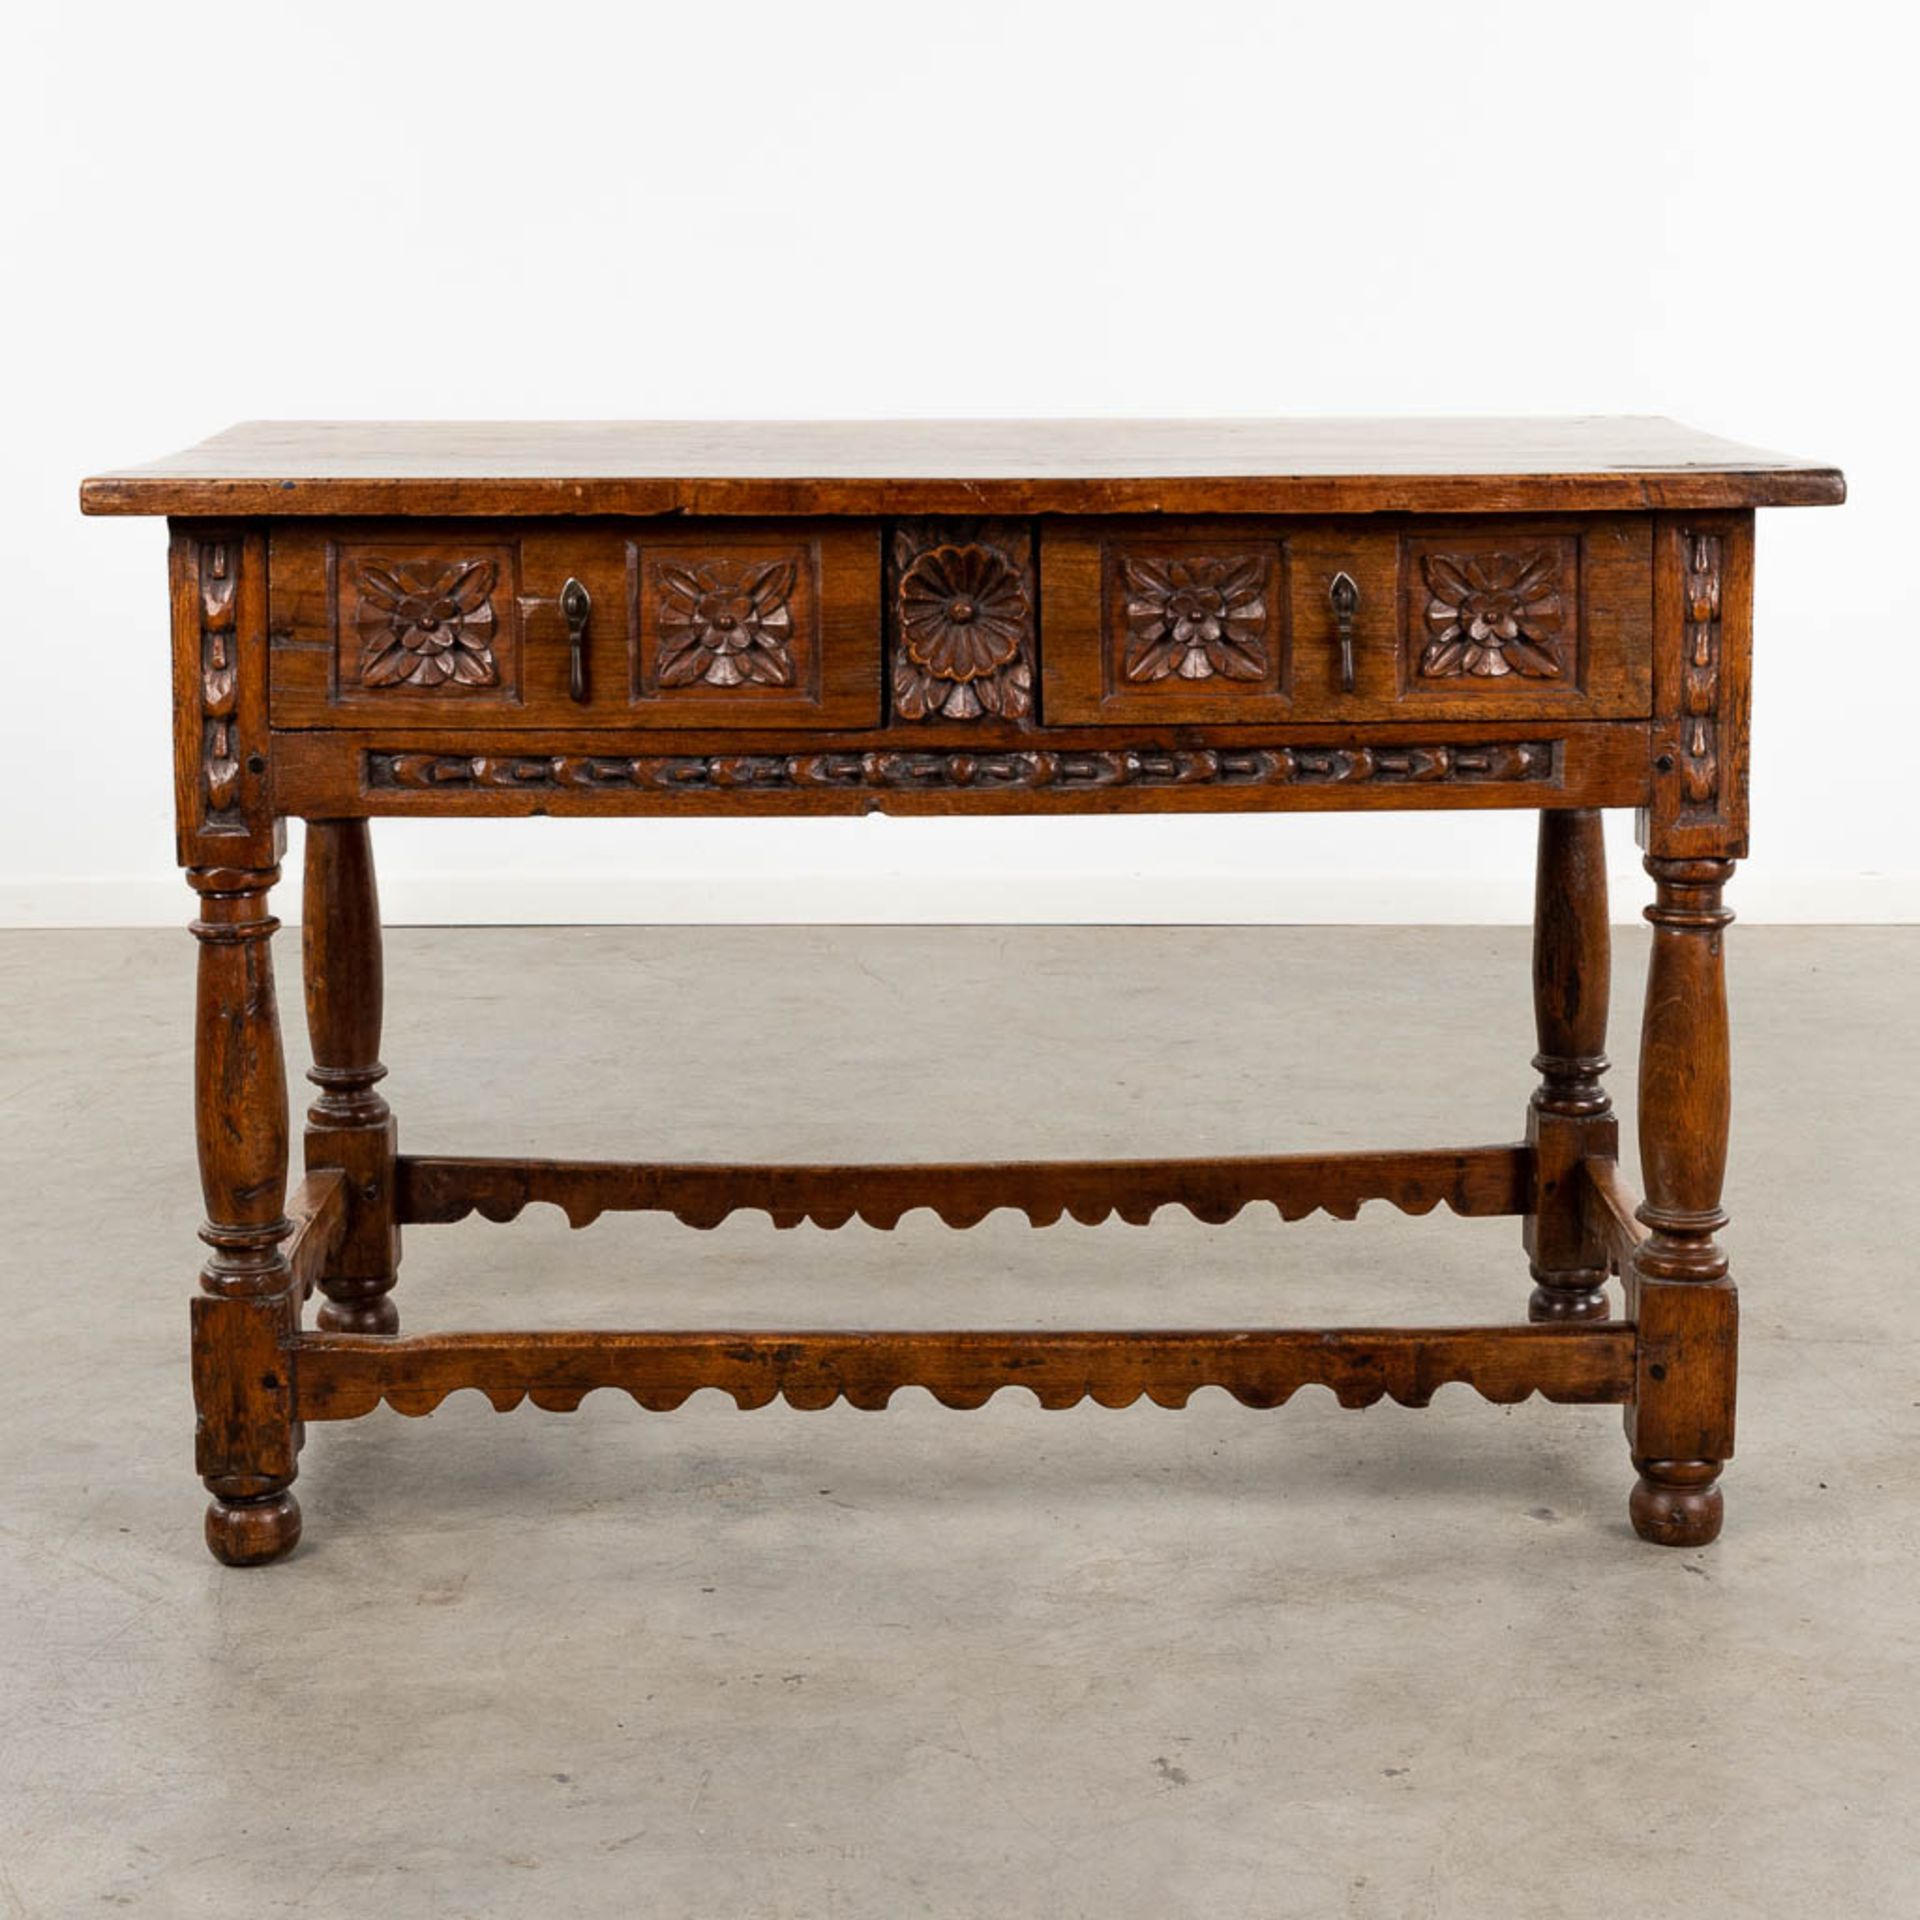 An antique "Table De Milieu", sculptured wood. Spain, 18th C. (D:72 x W:127 x H:82 cm) - Image 7 of 13